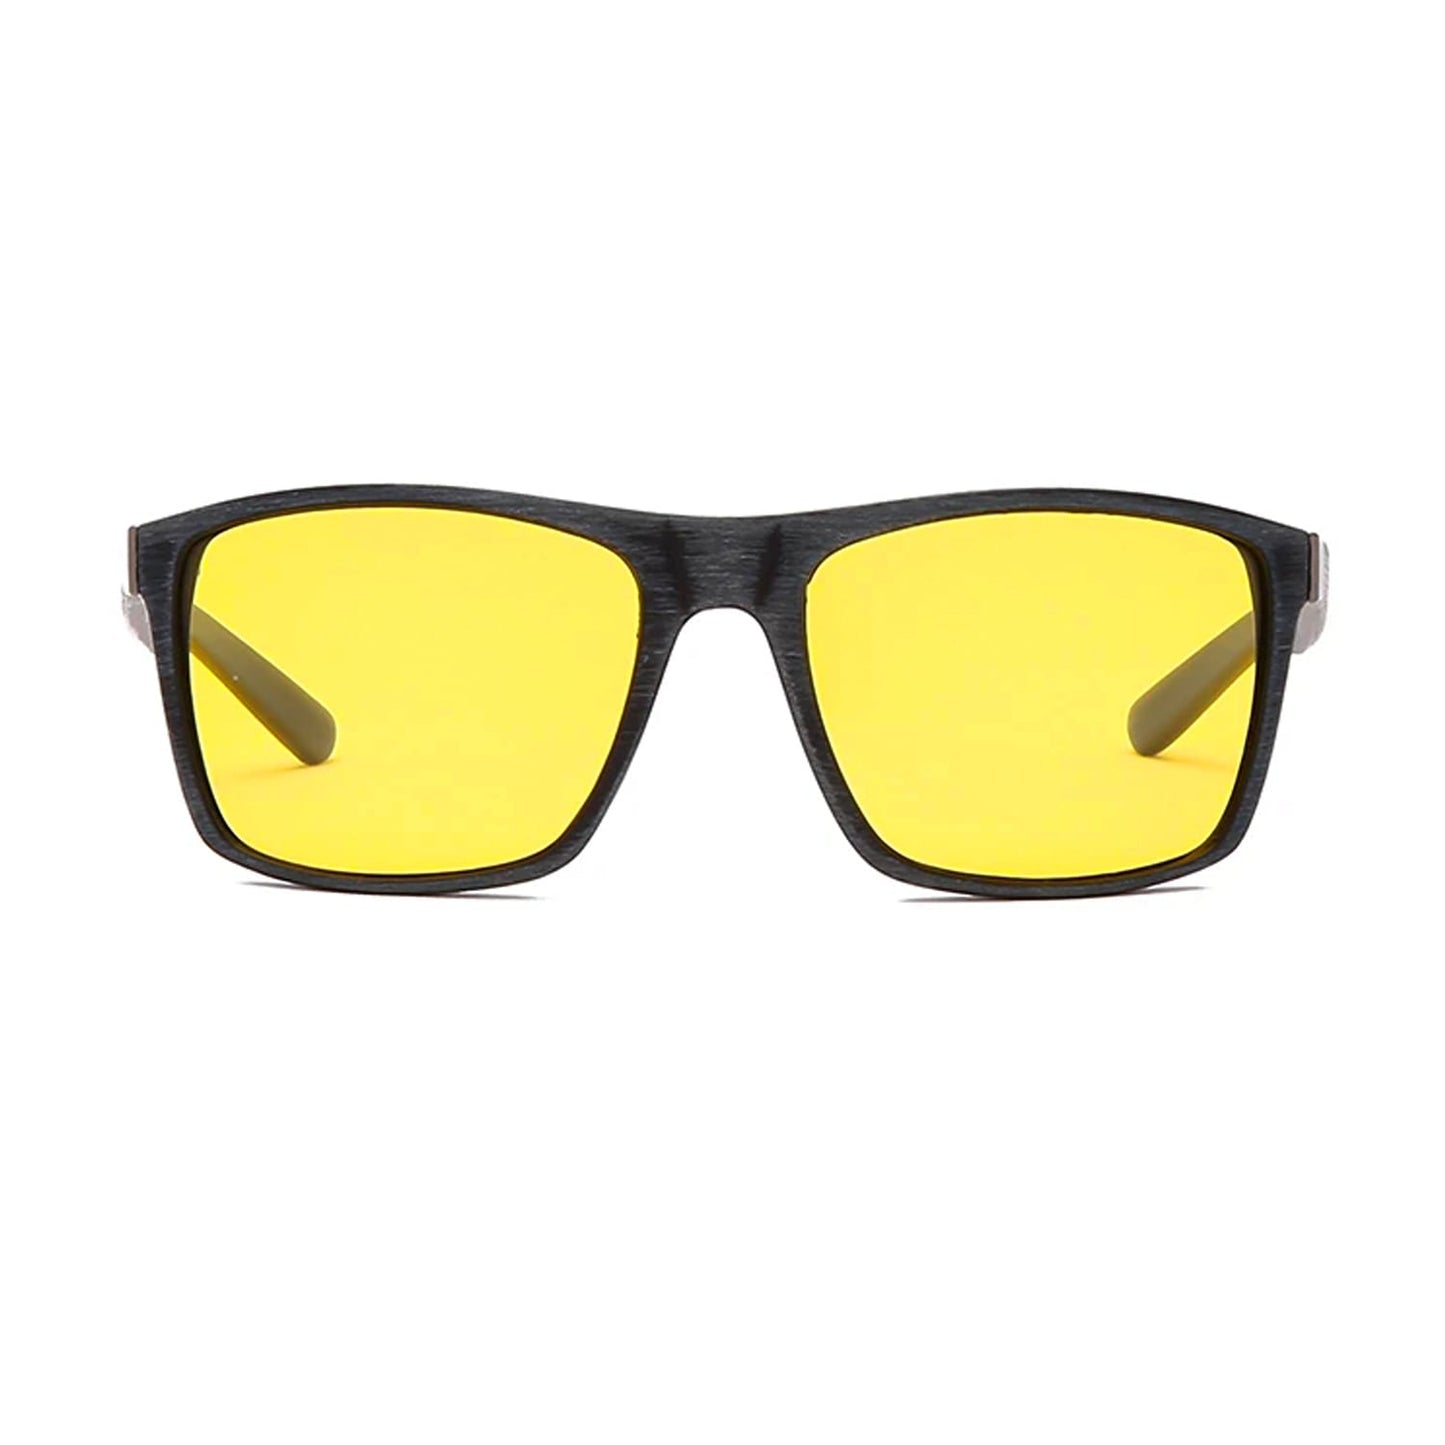 Brýle Yayty žluté